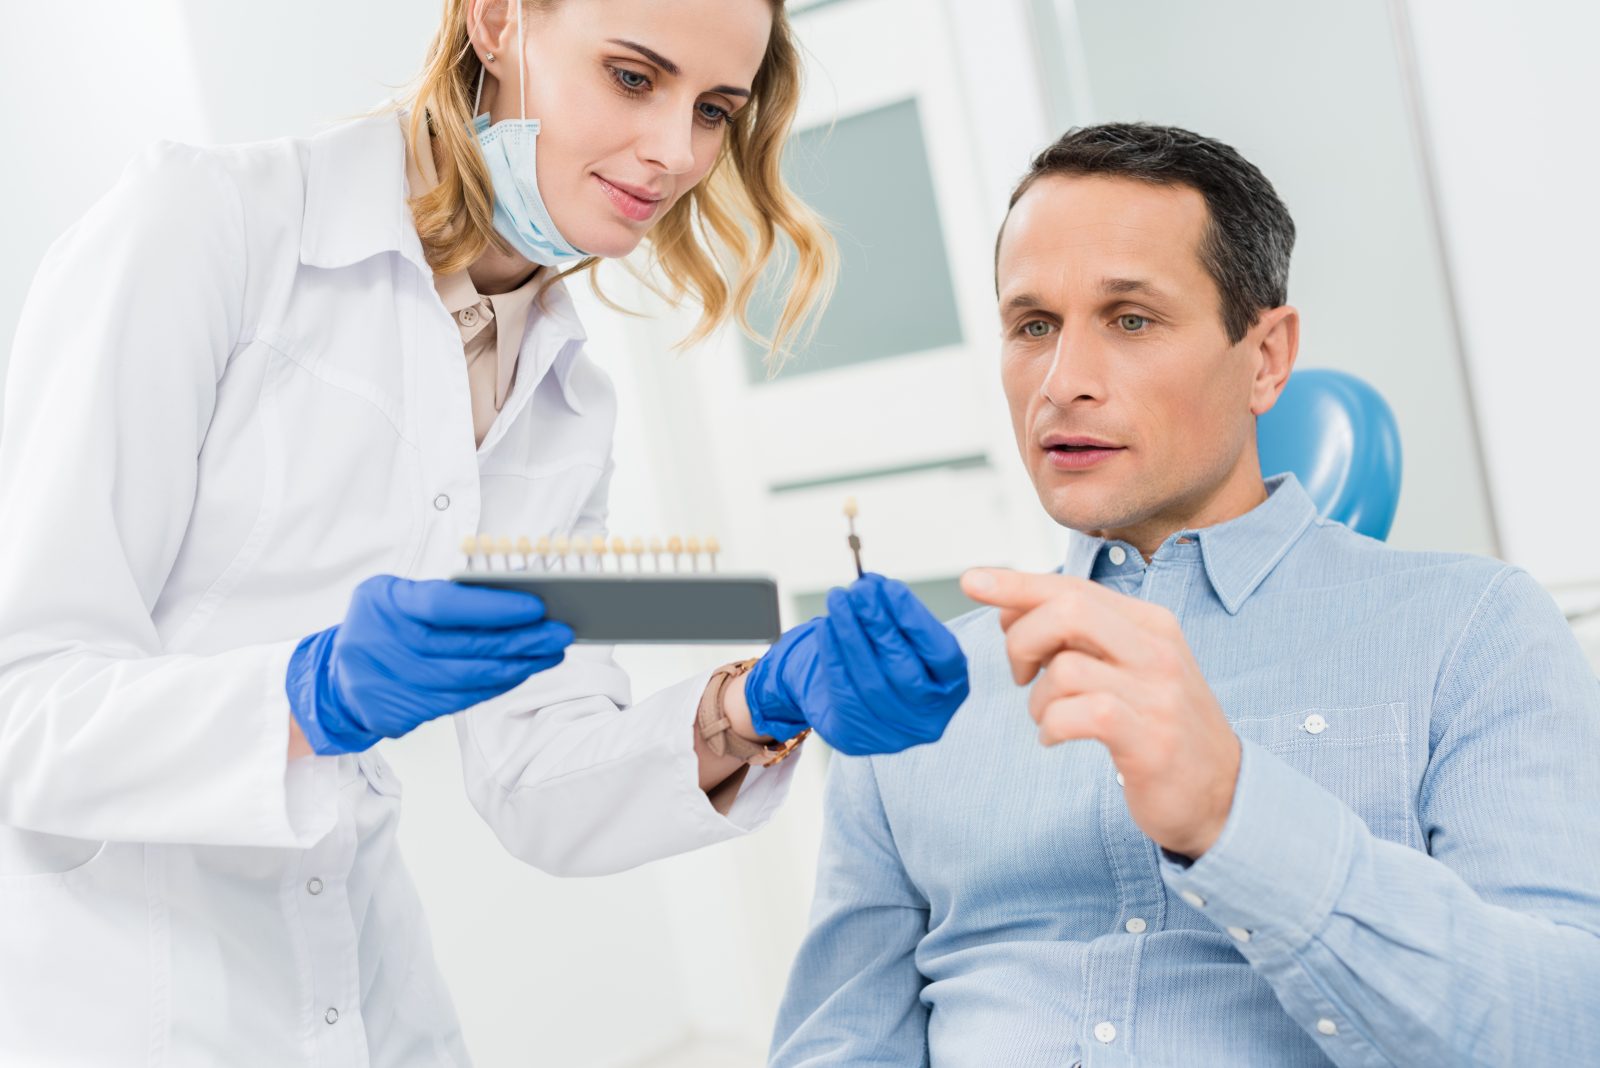 Les implants dentaires : 5 questions et réponses